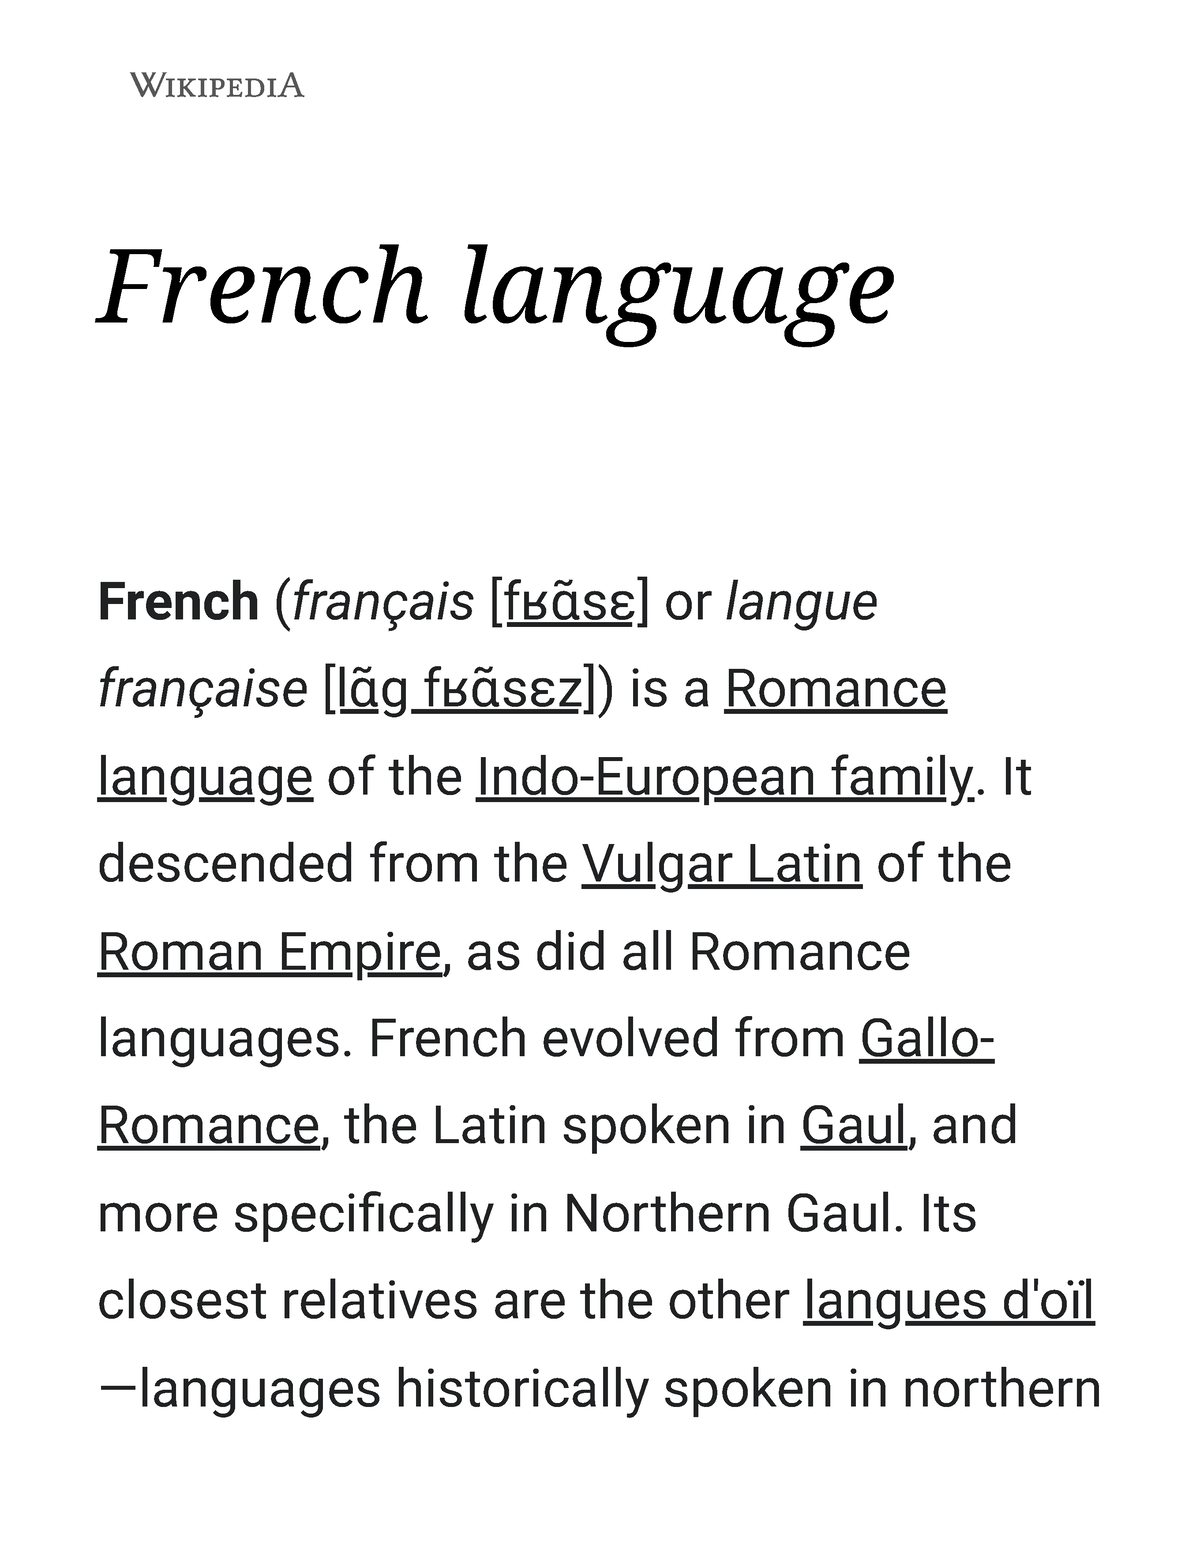 Langues d'oïl - Wikipedia